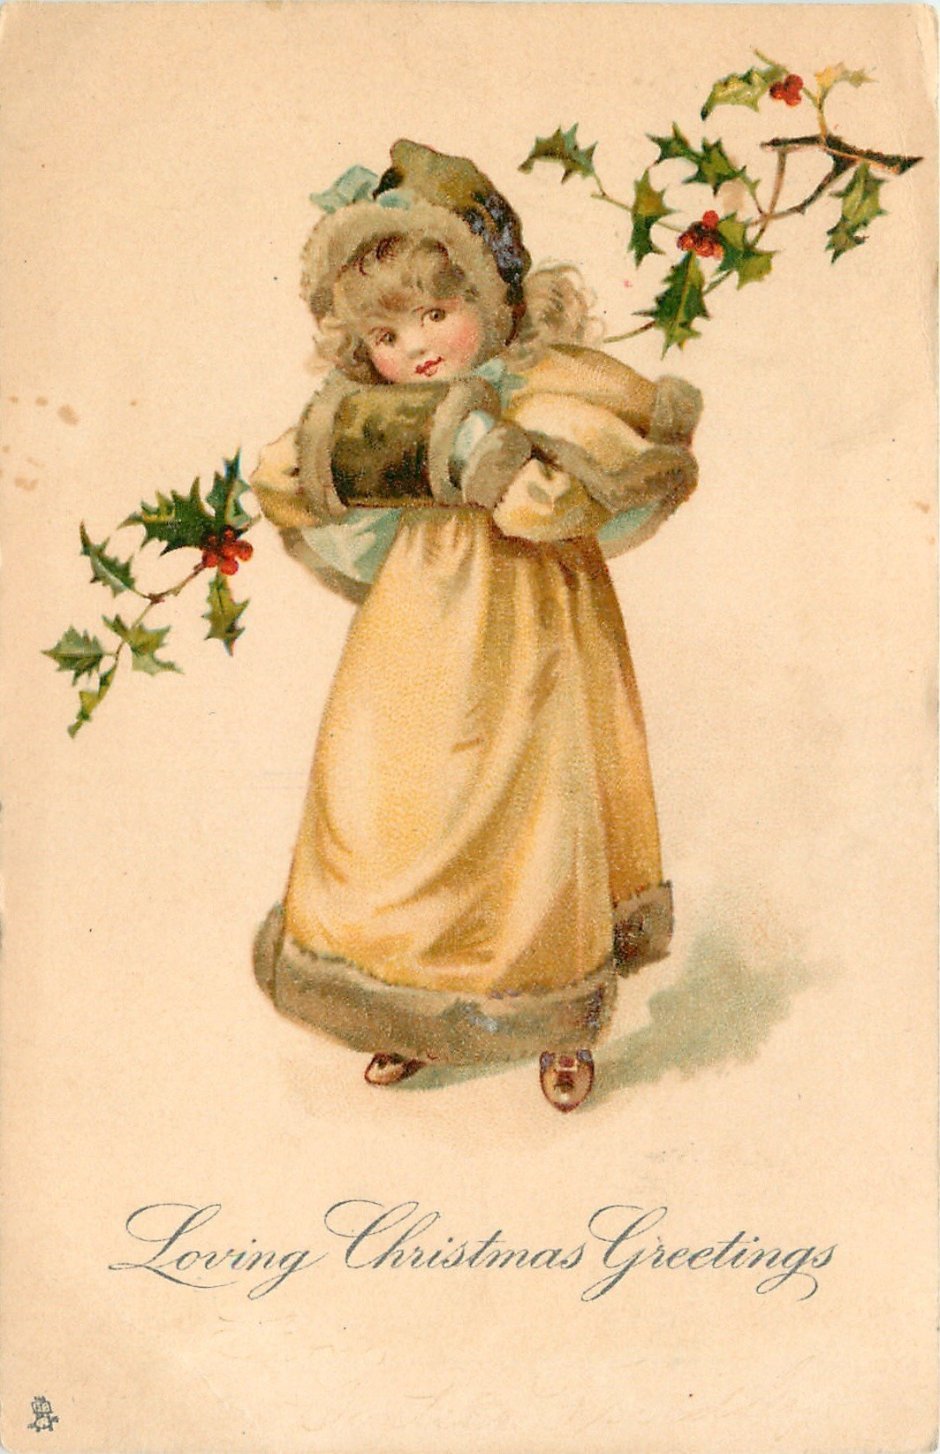 Новогодняя открытка в стиле 19 века